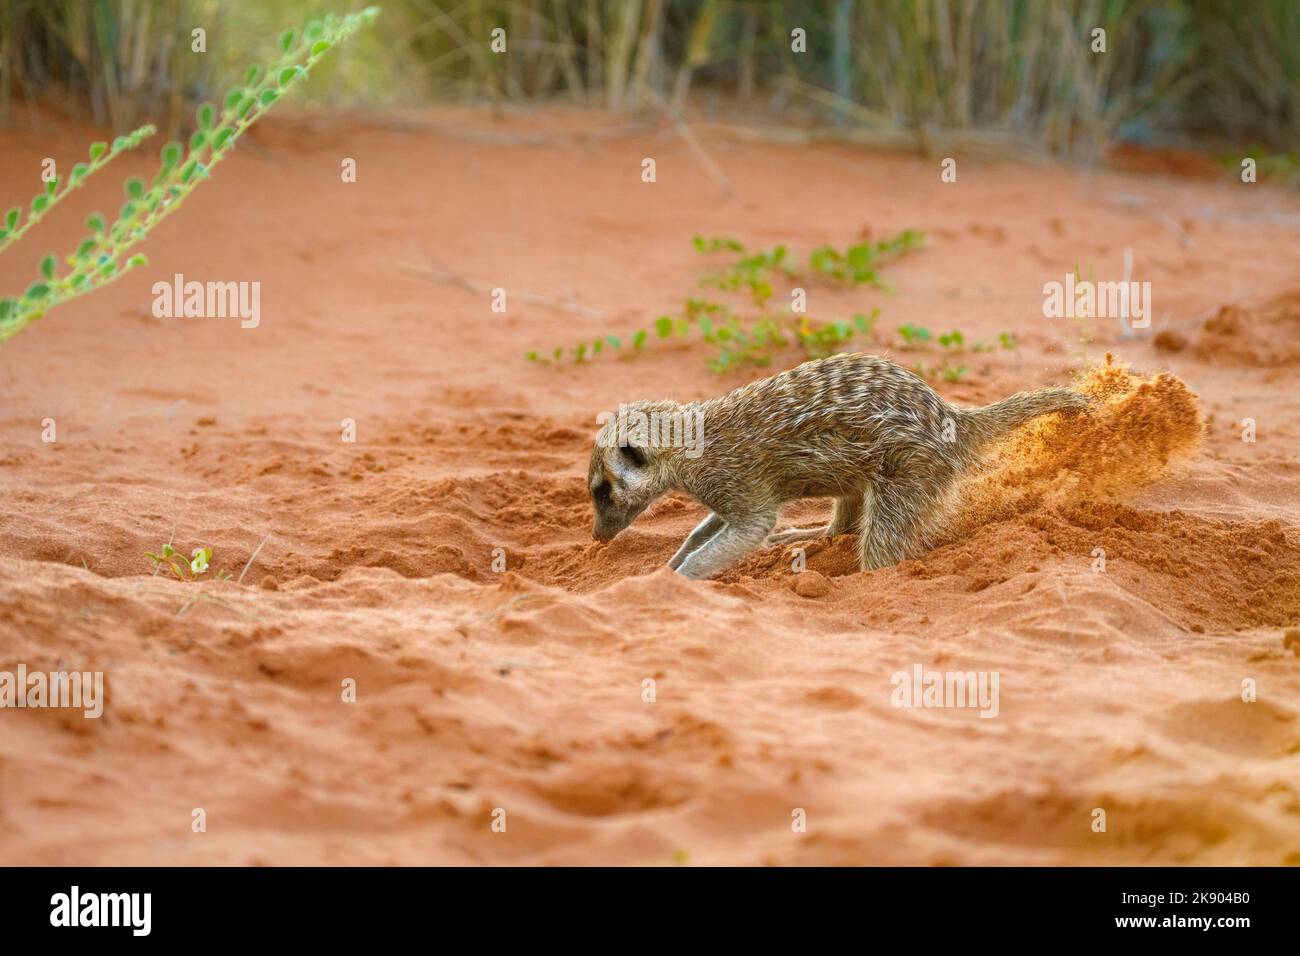 Süßes Erdmännchen Baby (Suricata suricatta) beim Graben nach Nahrung, rote Soi in der Luft. Kgalagadi Transfrontier Park, Kalahari, Südafrika Stockfoto